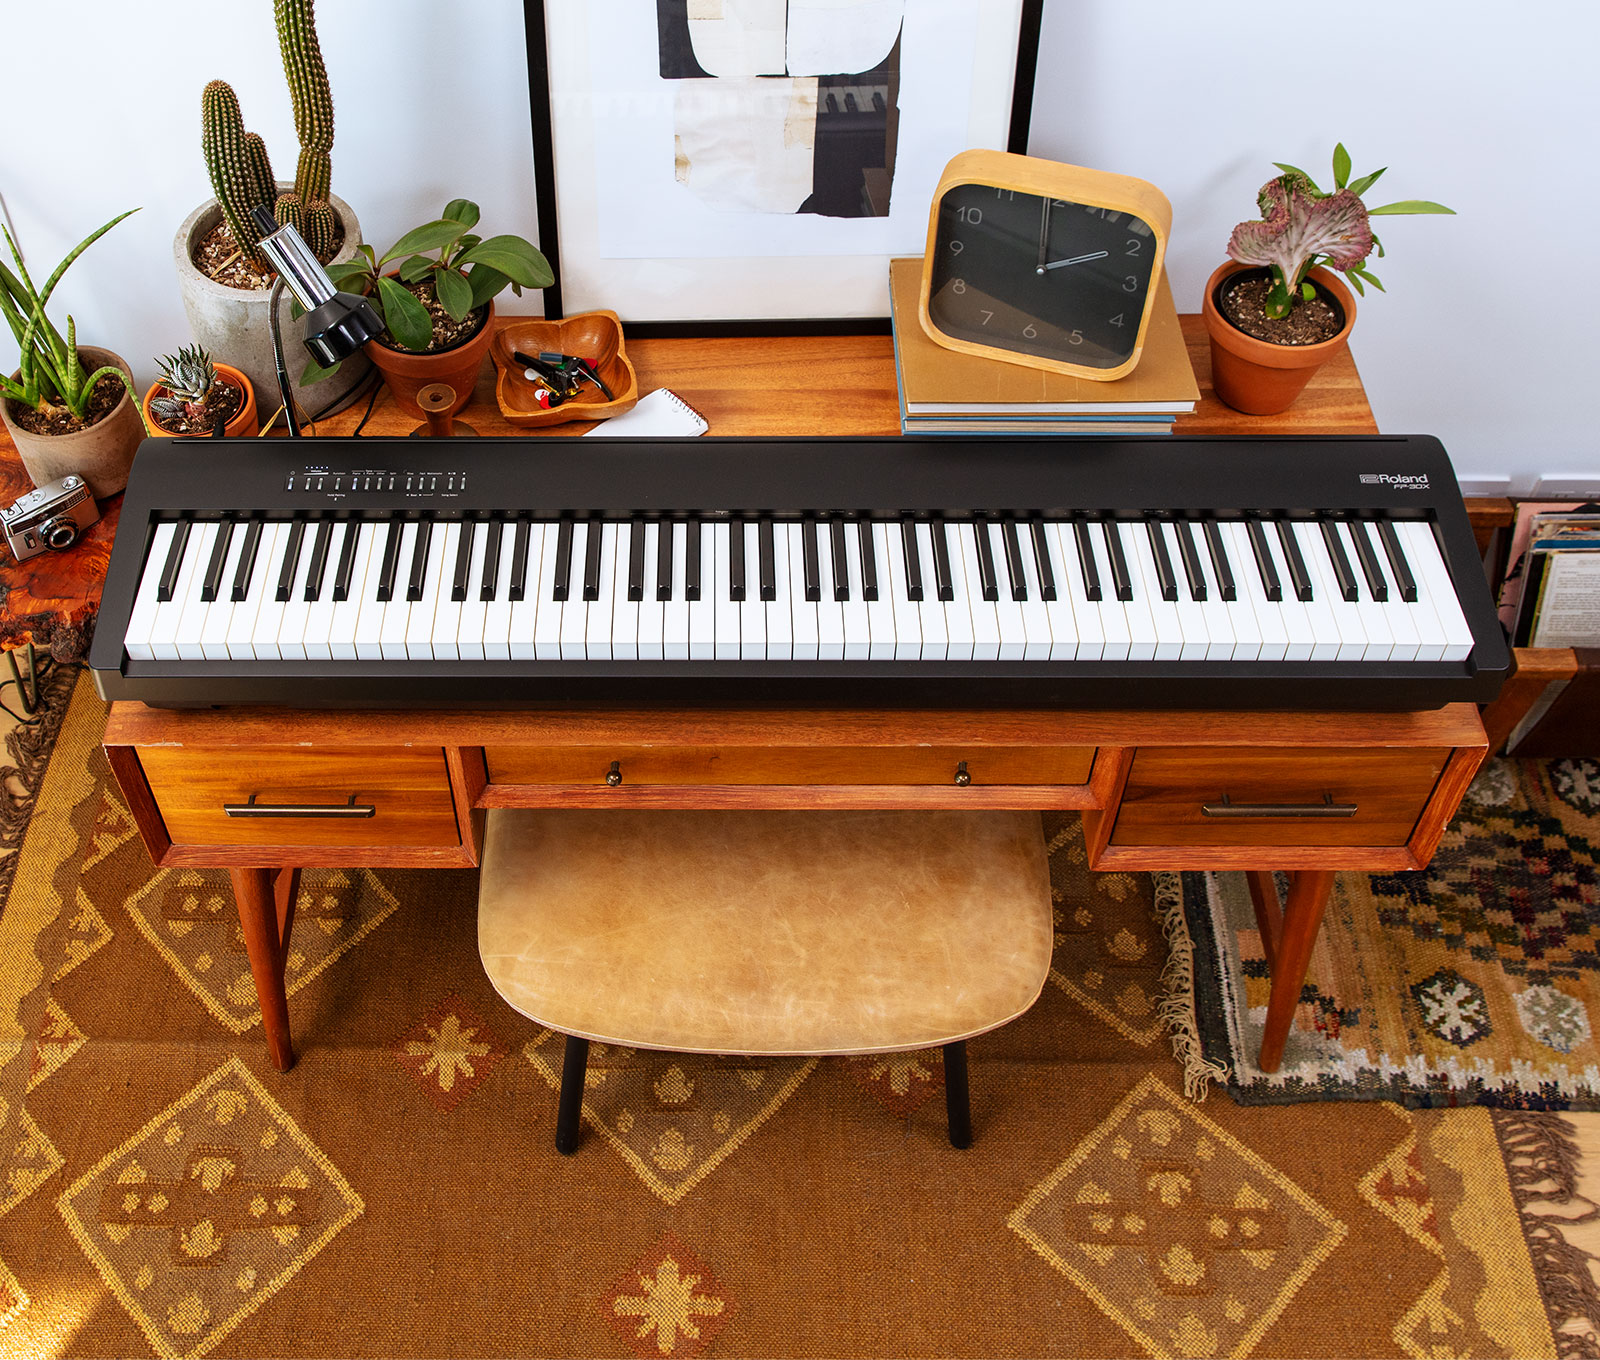 Roland FP-30X ポータブル・ピアノFPシリーズがグレードアップして新登場 スマートなデザインはそのままに、豊かな響きのピアノ・サウンドをはじめ、最新技術を盛り込みました。ホームユースでお使いいただきやすい、ピアノを弾きたくなる機能も強化。ピアノ初心者から上級者まで、ご自宅で気軽に楽しみた […]